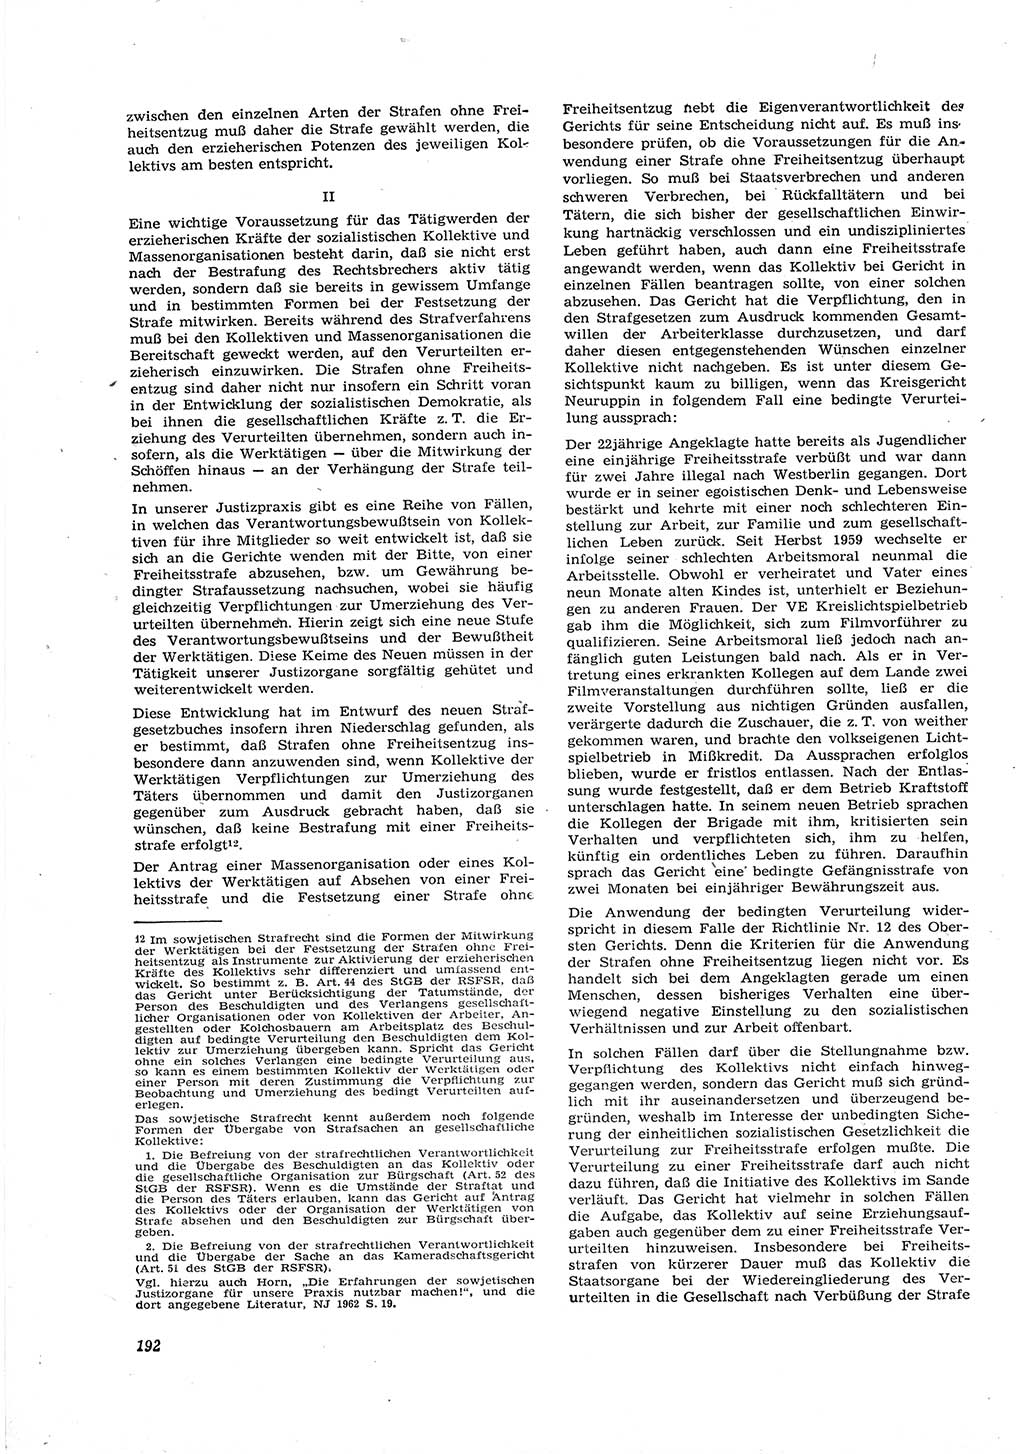 Neue Justiz (NJ), Zeitschrift für Recht und Rechtswissenschaft [Deutsche Demokratische Republik (DDR)], 16. Jahrgang 1962, Seite 192 (NJ DDR 1962, S. 192)